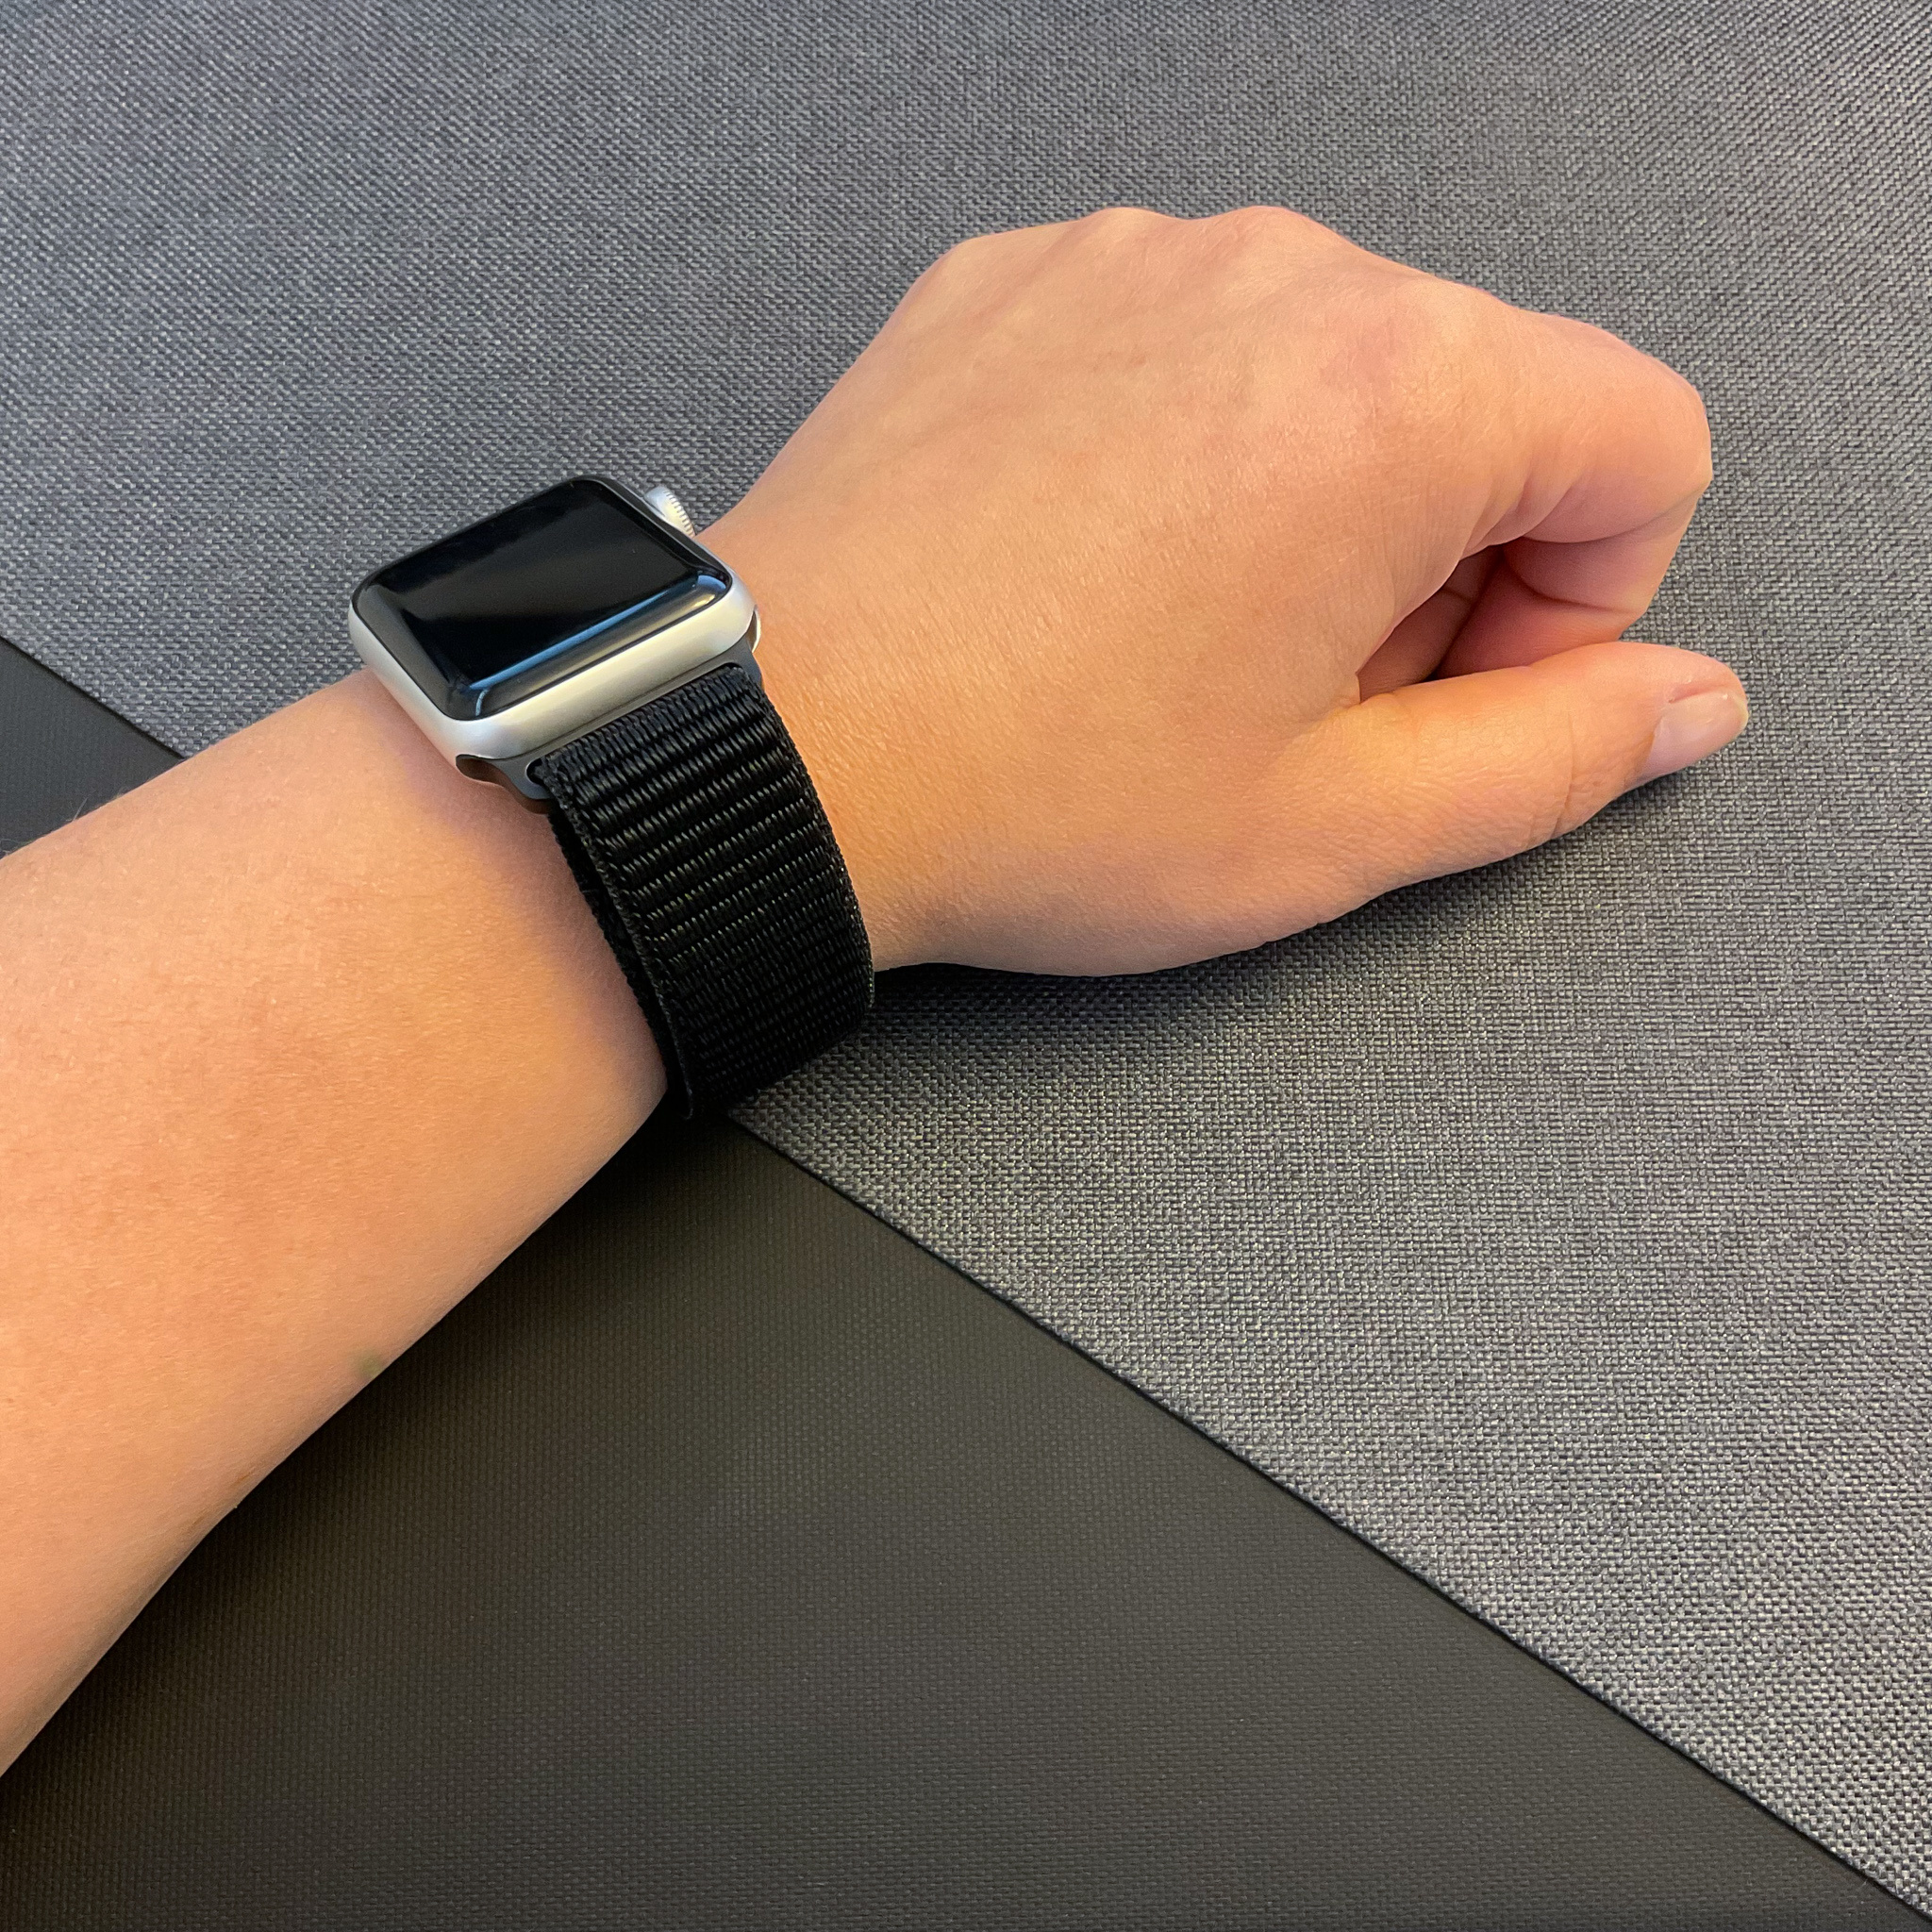 Bracelet boucle sport en nylon Apple Watch sportif - noir foncé